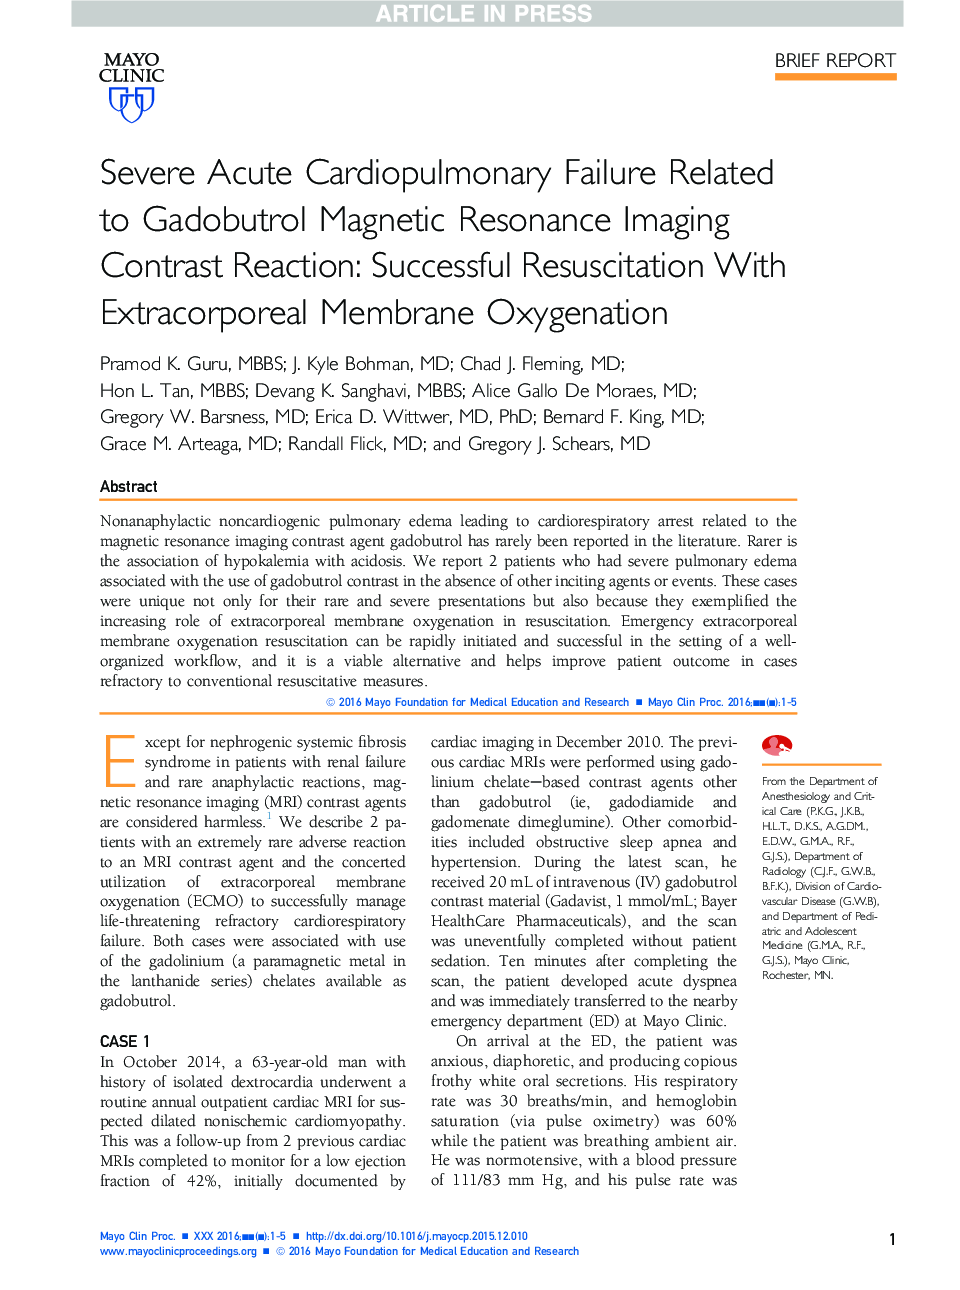 نارسایی حاد قلبی عروقی مرتبط با واکنش کنتراست تصویربرداری رزونانس مغناطیسی گادوبوترول 